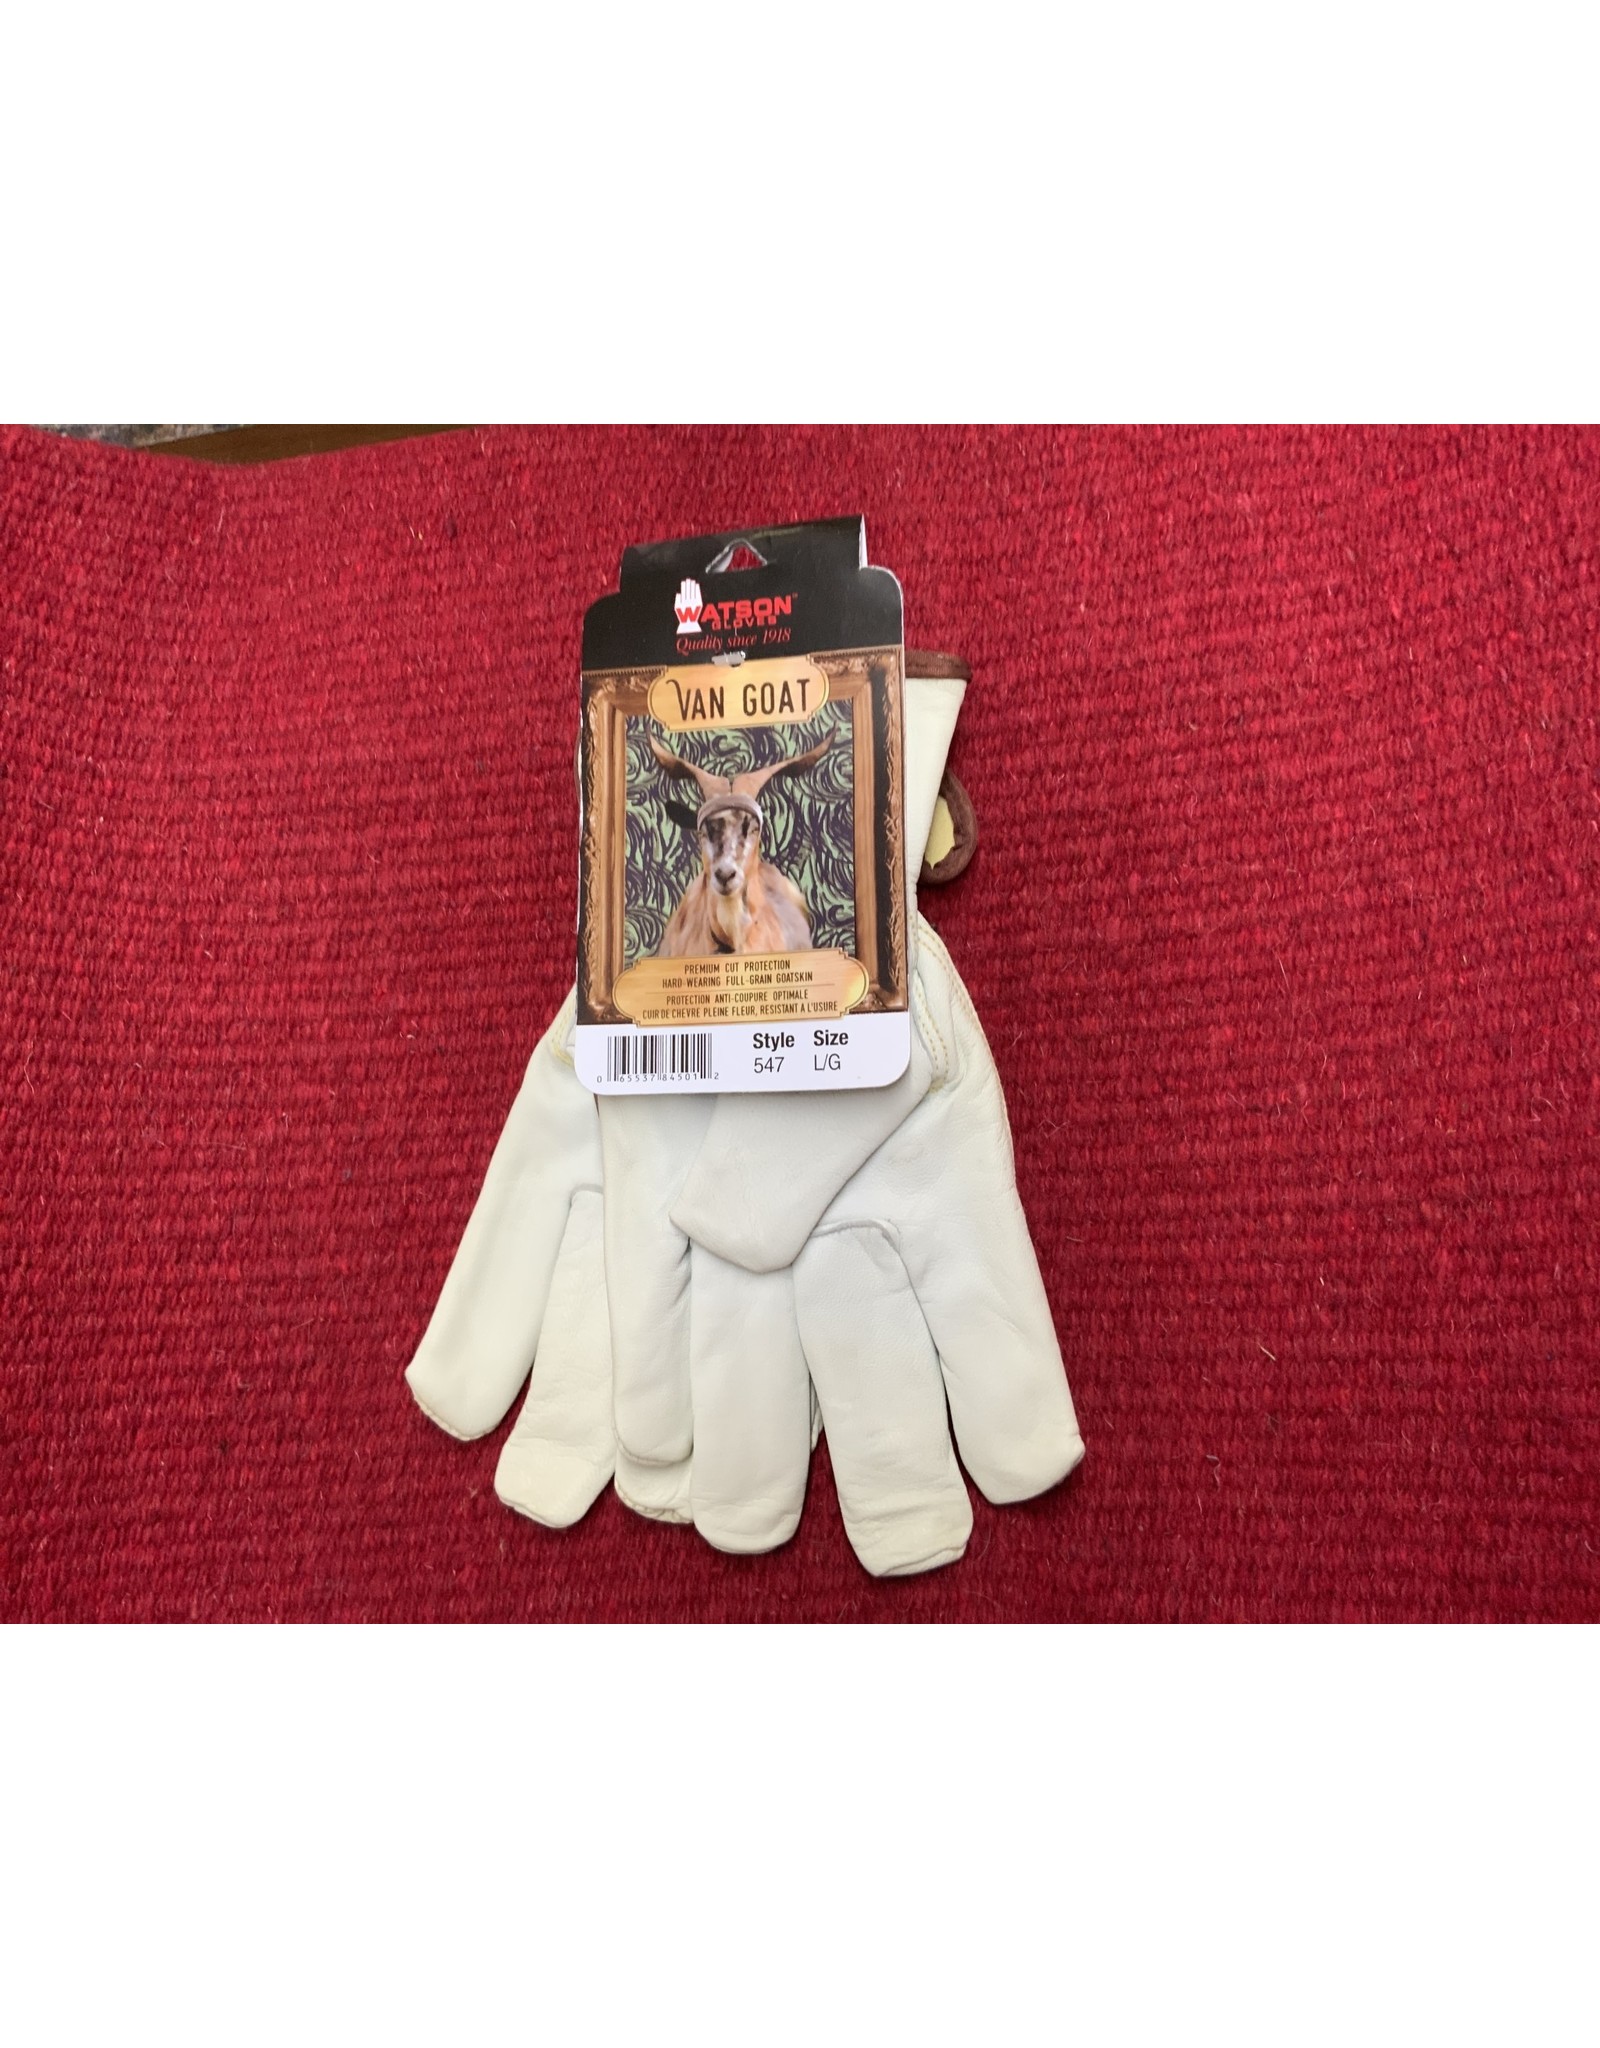 Watson Gloves Gloves*Van Goat (goat skin) Fencing Gloves w/Kevlar liner - L 547